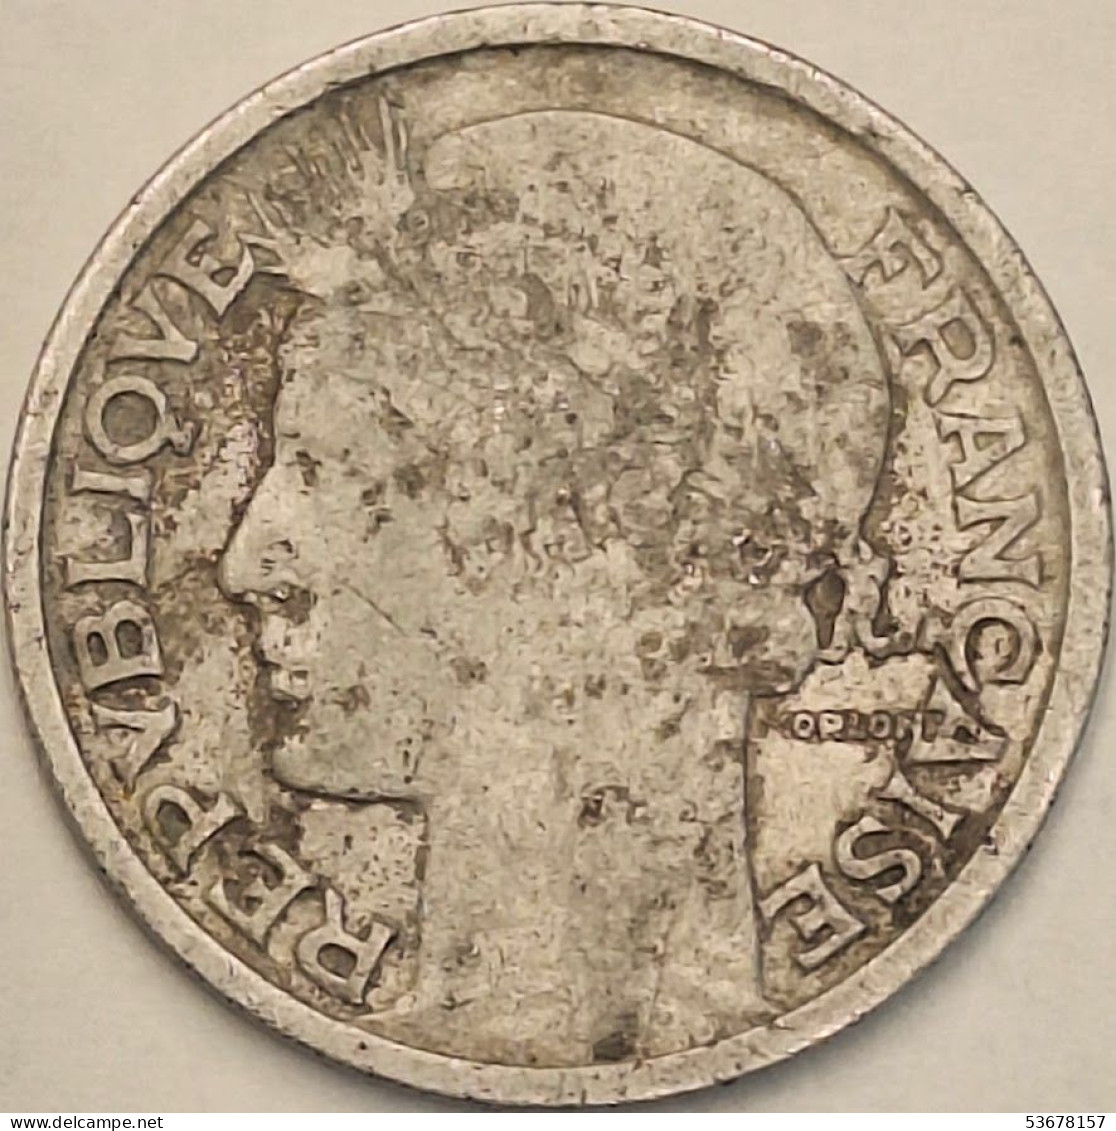 France - 2 Francs 1947, KM# 886a.1 (#4108) - 2 Francs